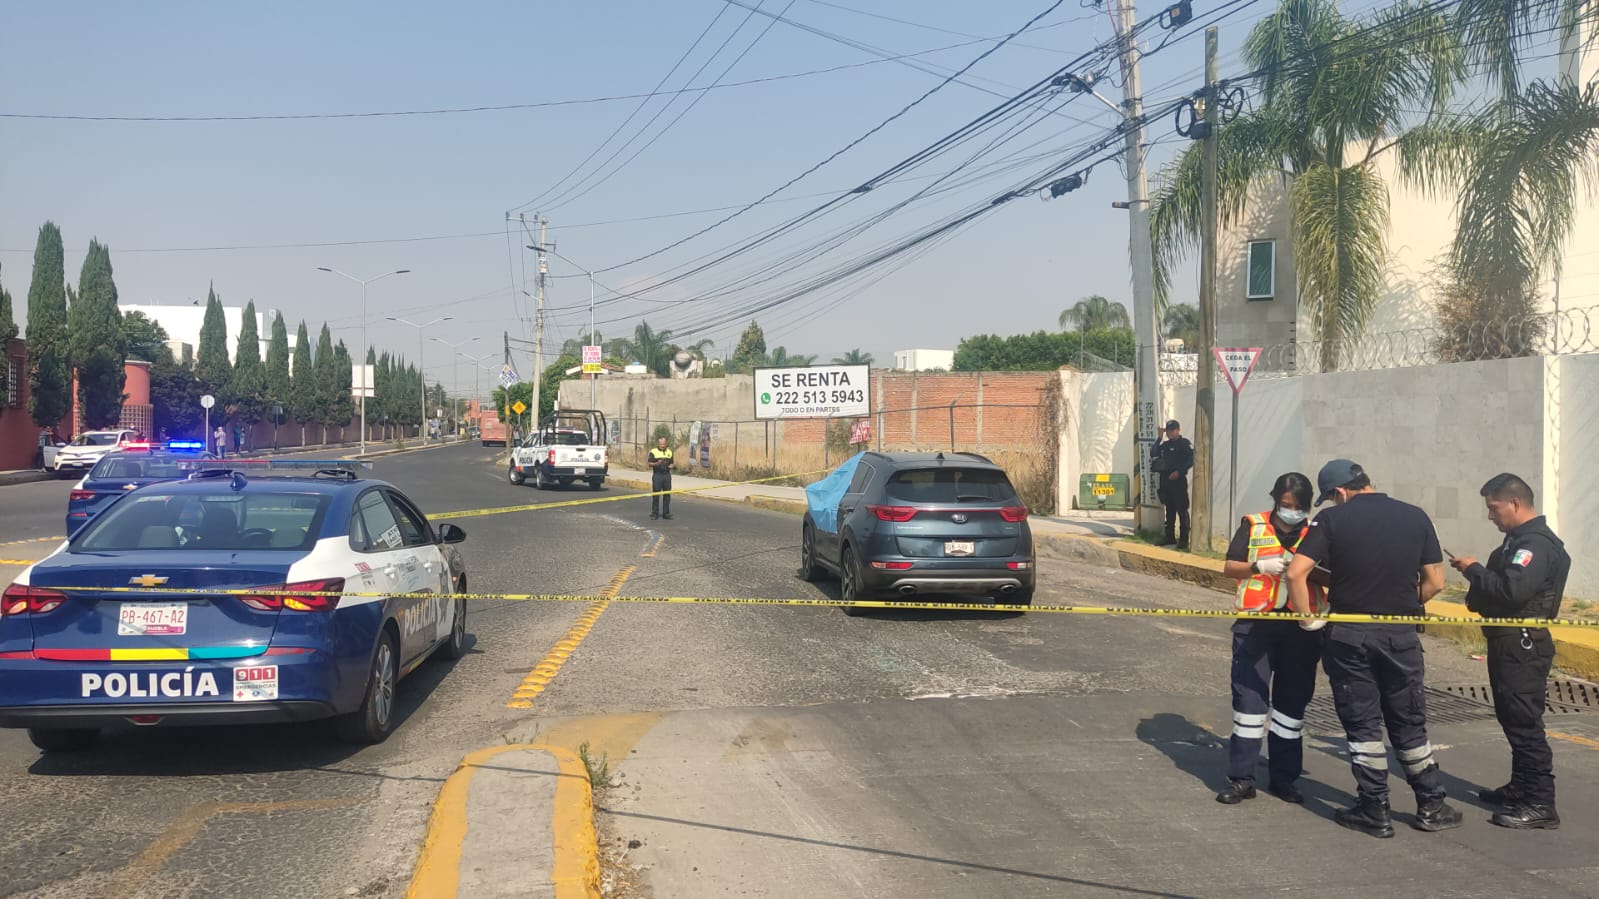 VIDEO De seis disparos le quitan la vida a una mujer en San Pedro Cholula